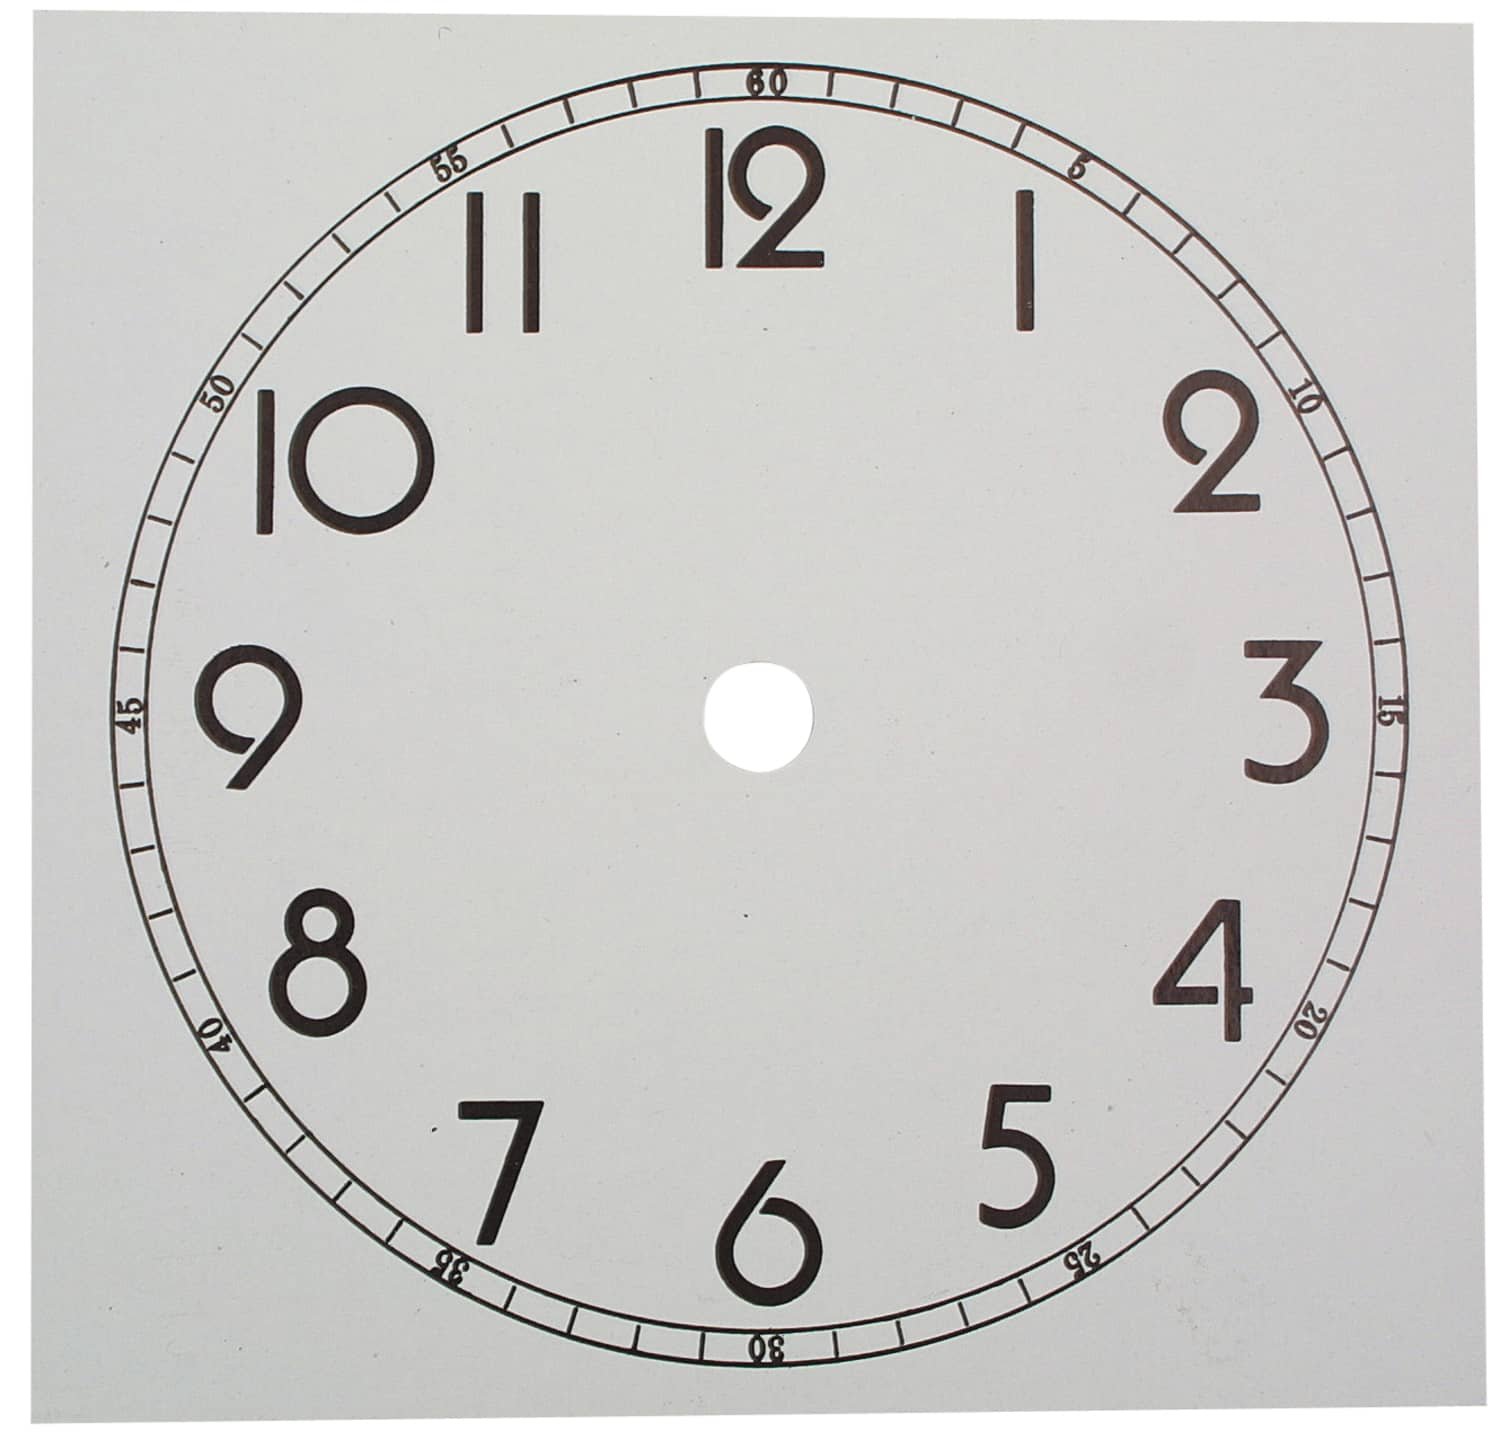 Циферблаты мод. Часы из картона. Циферблат часов из картона. Макет часов для детей. Модель часов из картона.